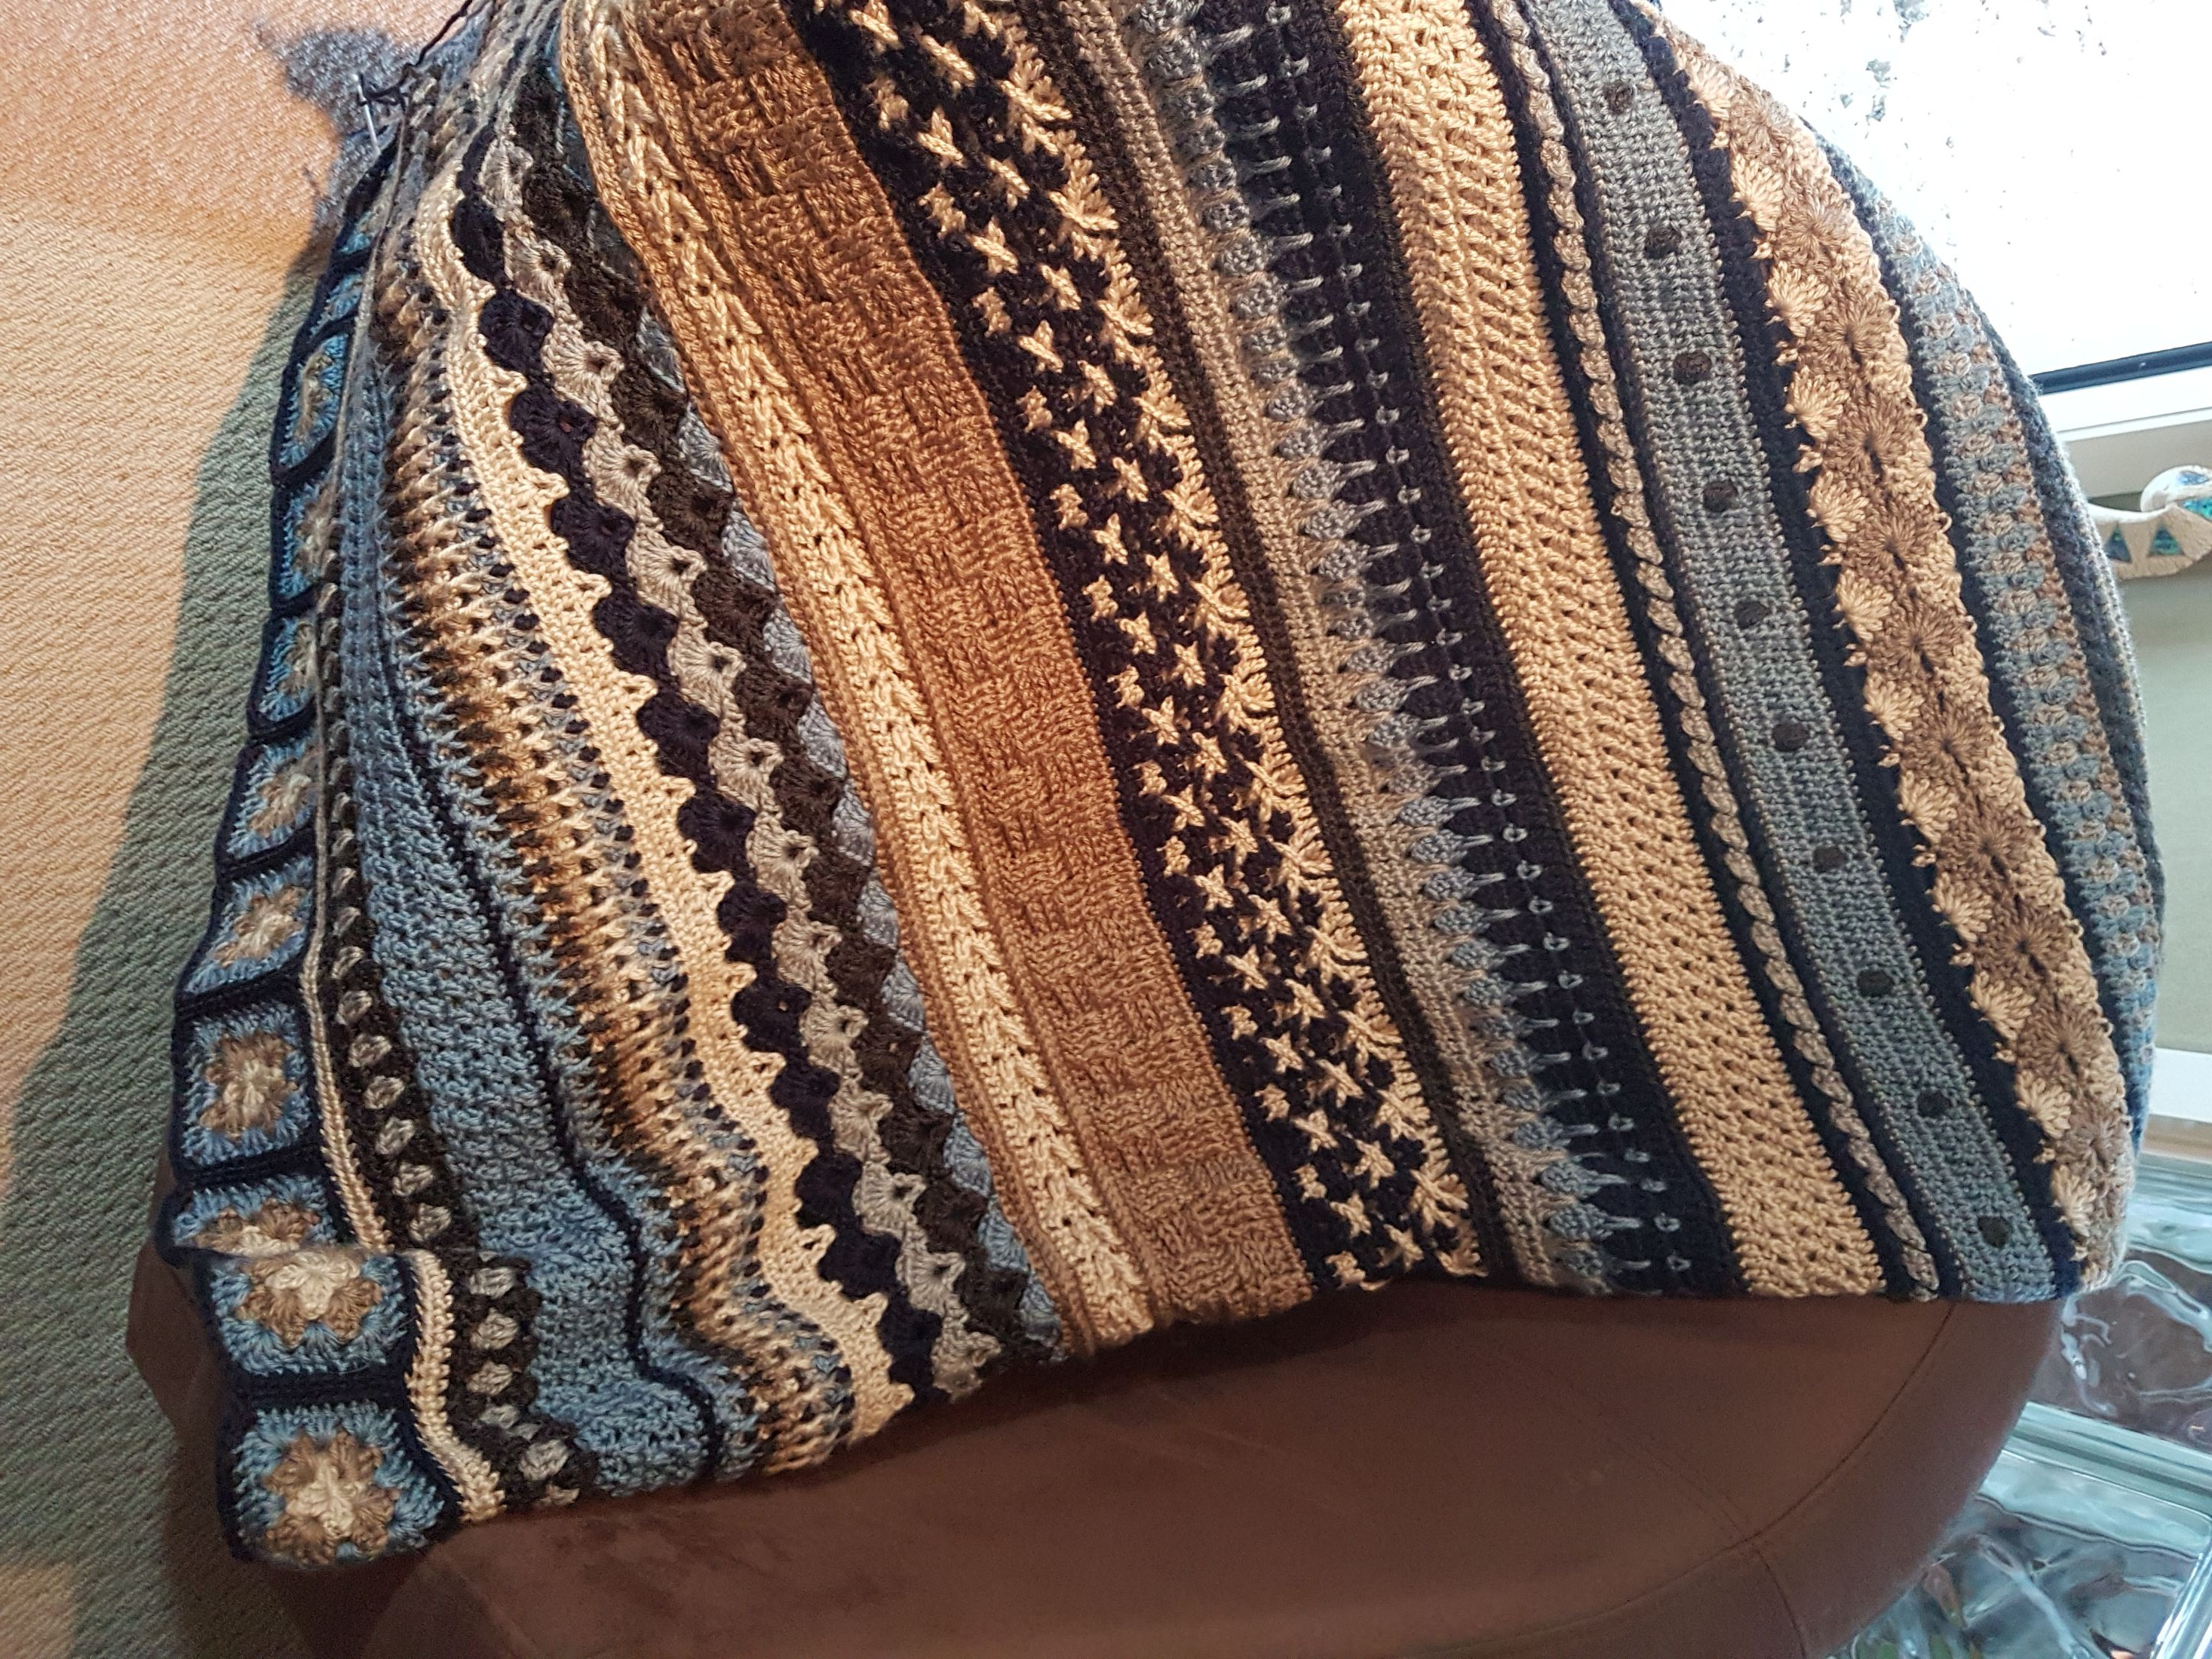 Hooked on Crochet Thursdays at WILSS